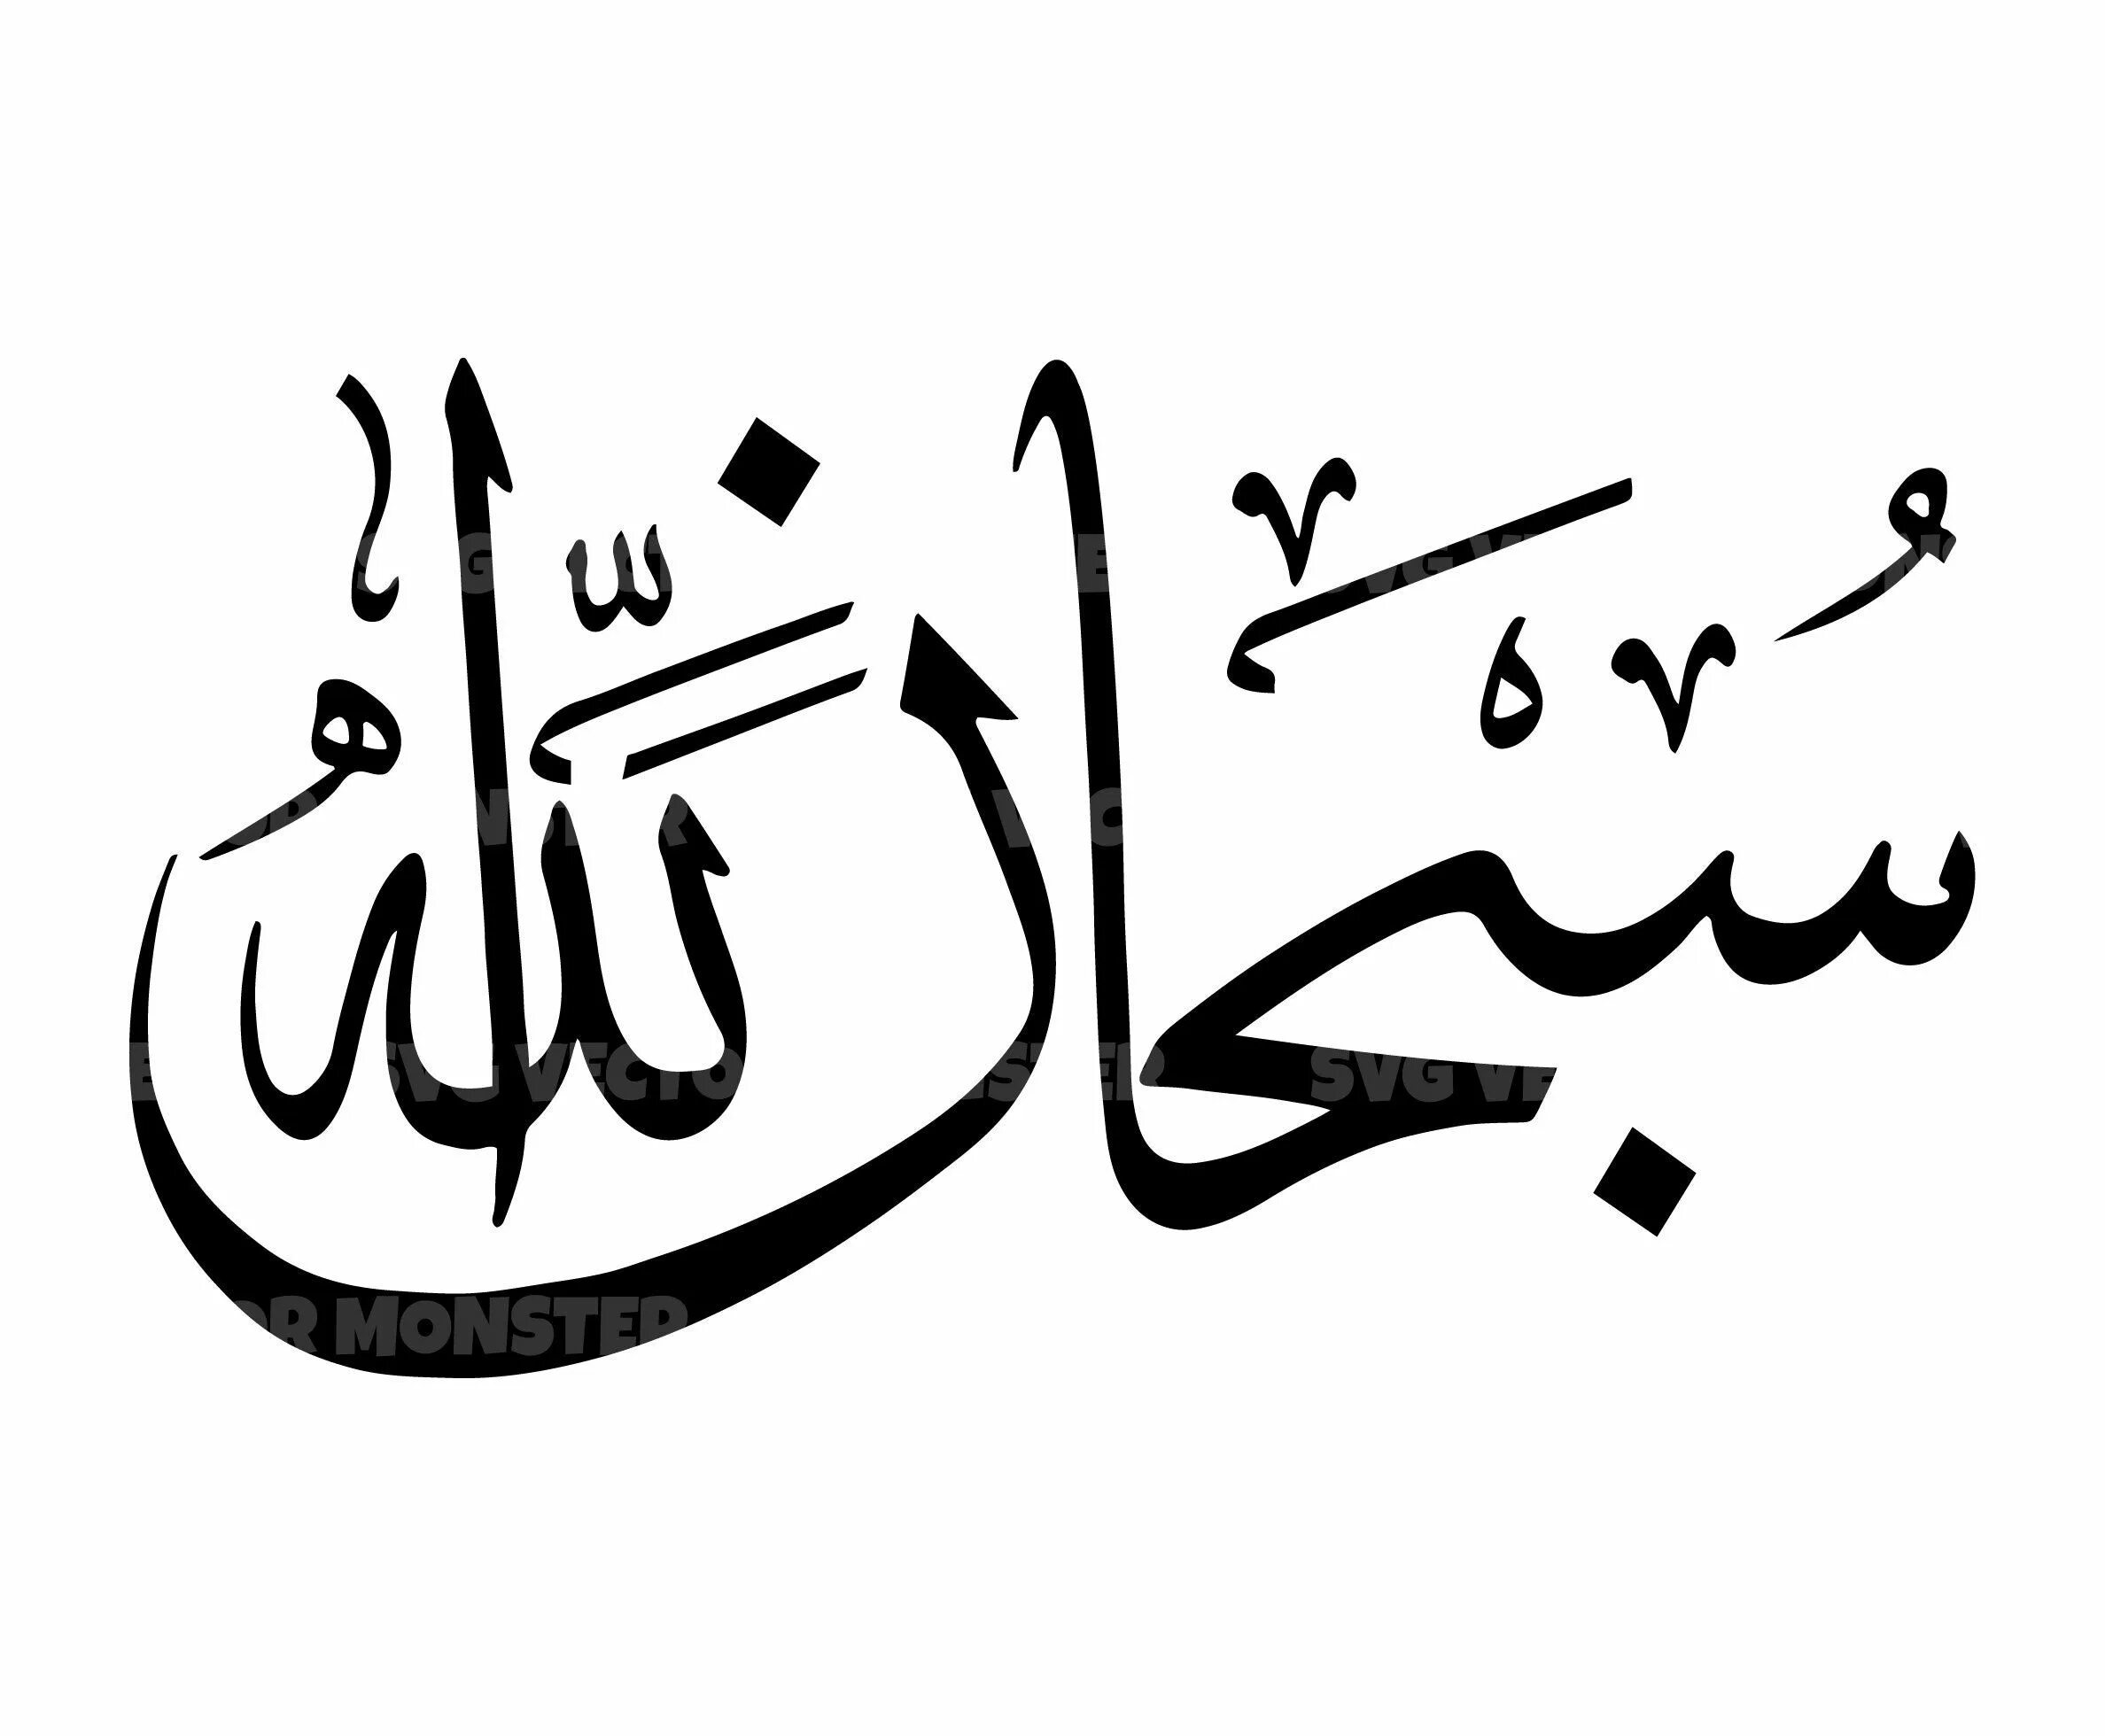 СУБХАНАЛЛАХ на арабском каллиграфия. Исламская каллиграфия МАШААЛЛАХ. Исламская каллиграфия Бисмилла. Арабские надписи. Слава на арабском